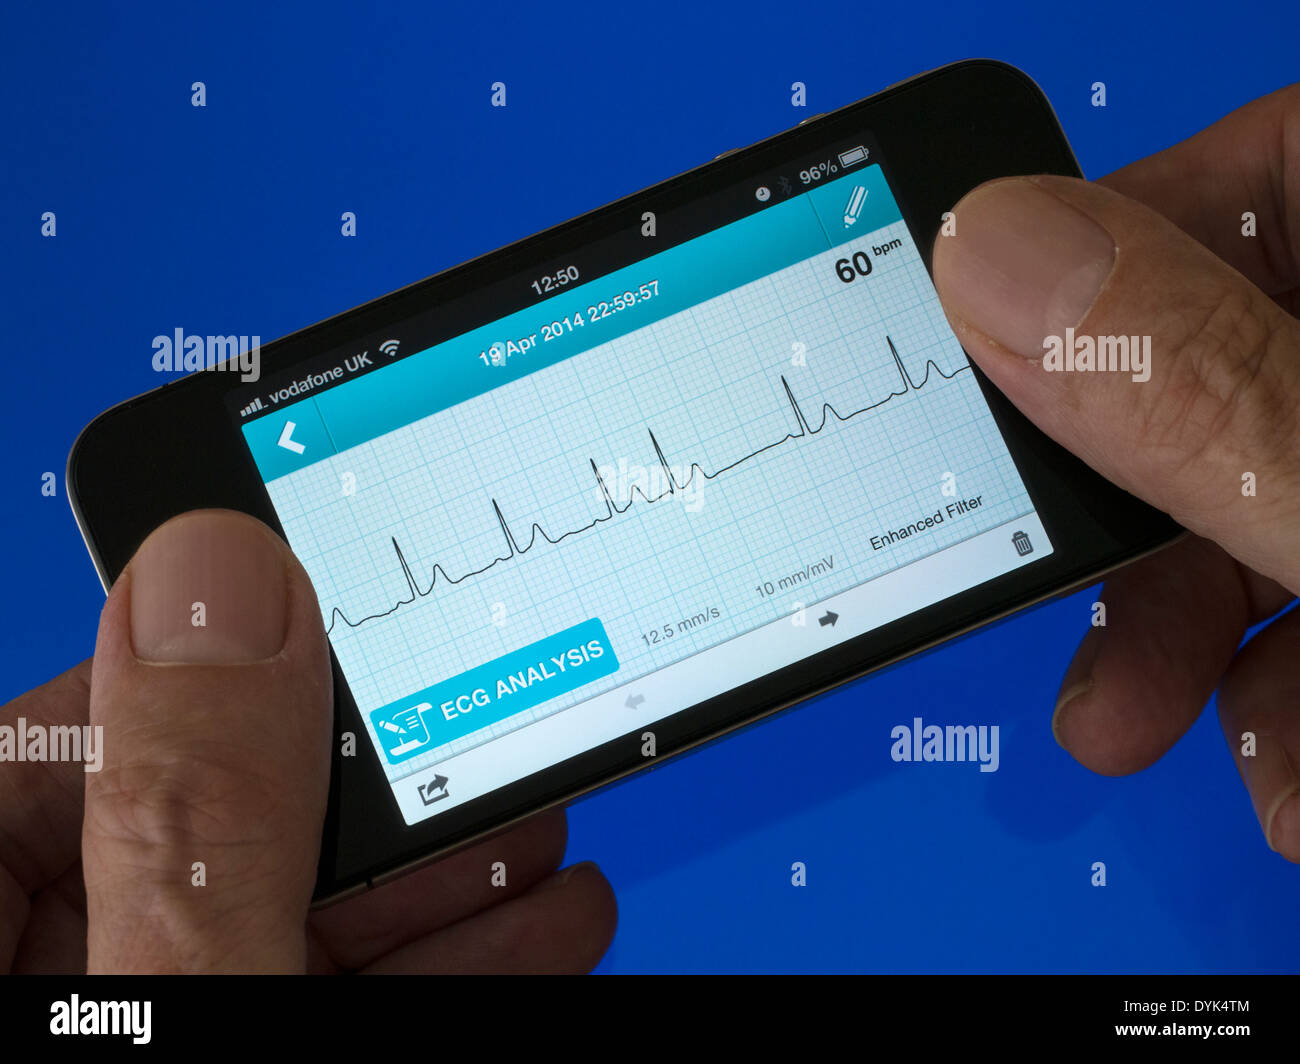 Utente azienda ECG portatile EKG Cardiofrequenzimetro App in esecuzione su iPhone 4 che mostra sinusale normale ritmo cardiaco con un battito ectopico Foto Stock